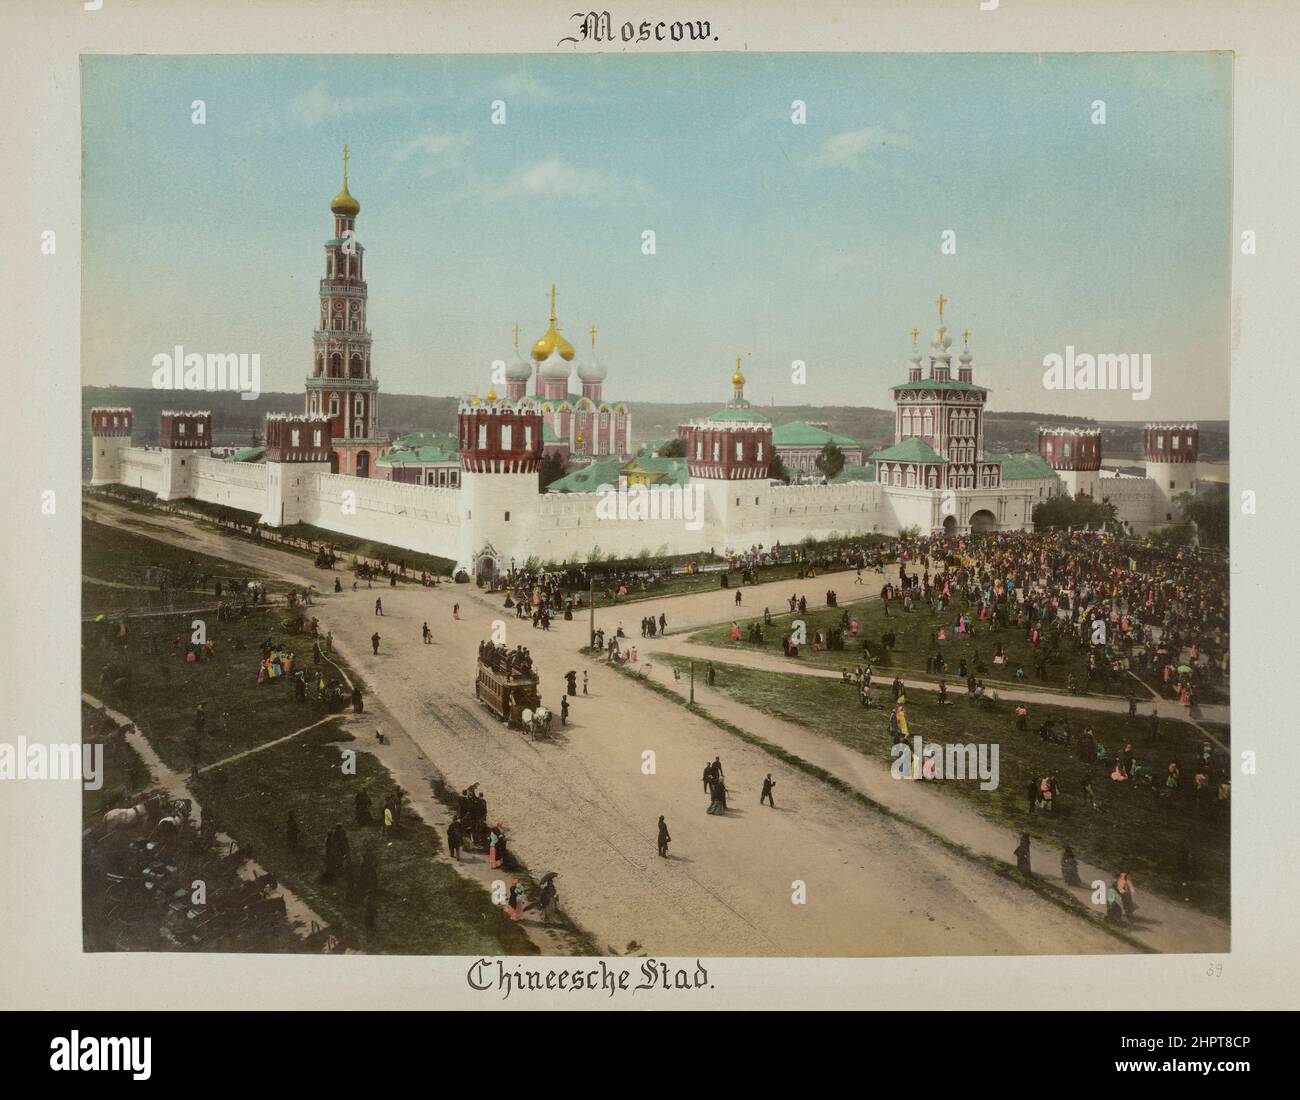 Photo d'époque de Kitay-gorod à Moscou. Empire russe. 1898 Kitay-gorod, également appelé le Grand Possad dans les 16th–17th siècles, est un cultur Banque D'Images